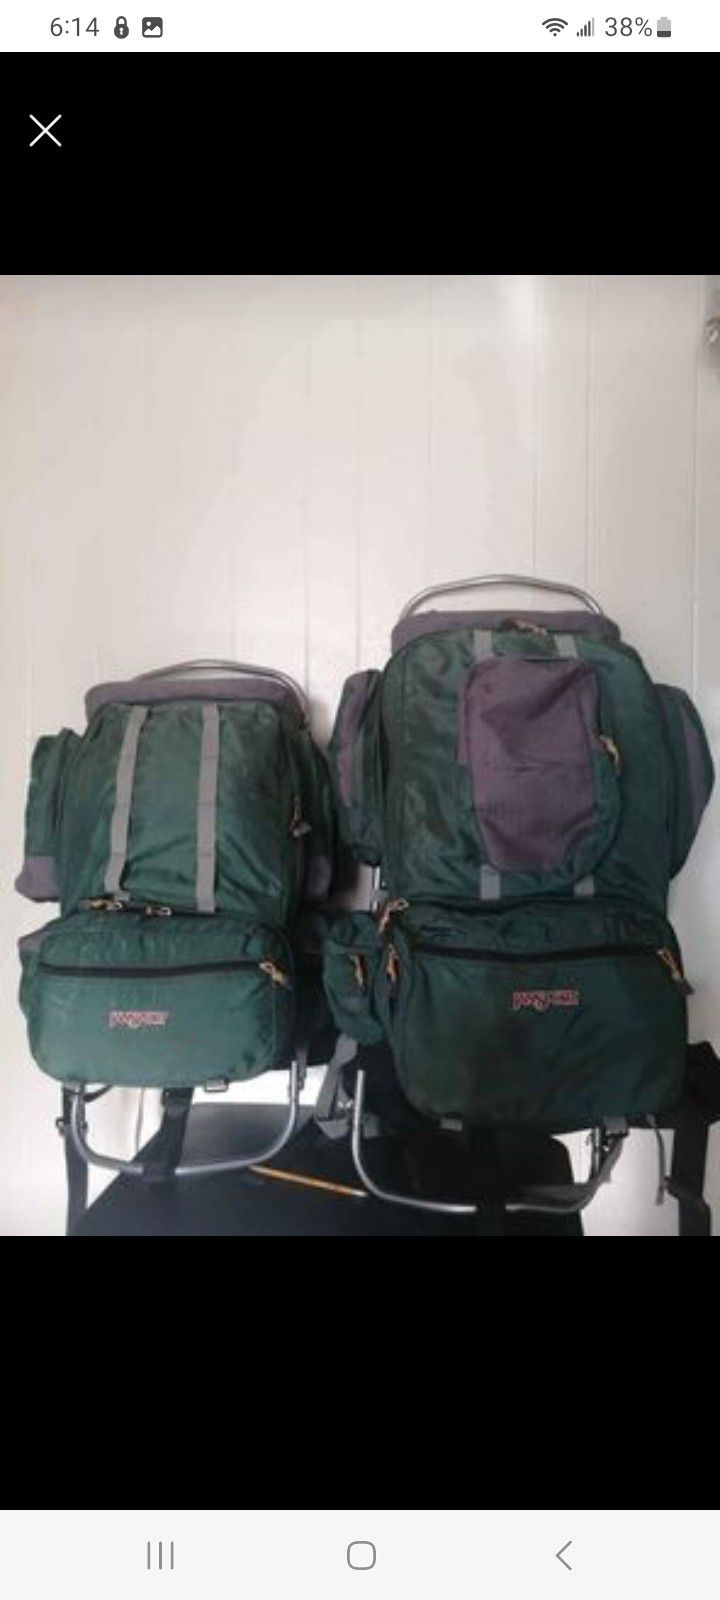 External frame hiking backpack for her and him green vintage jansport